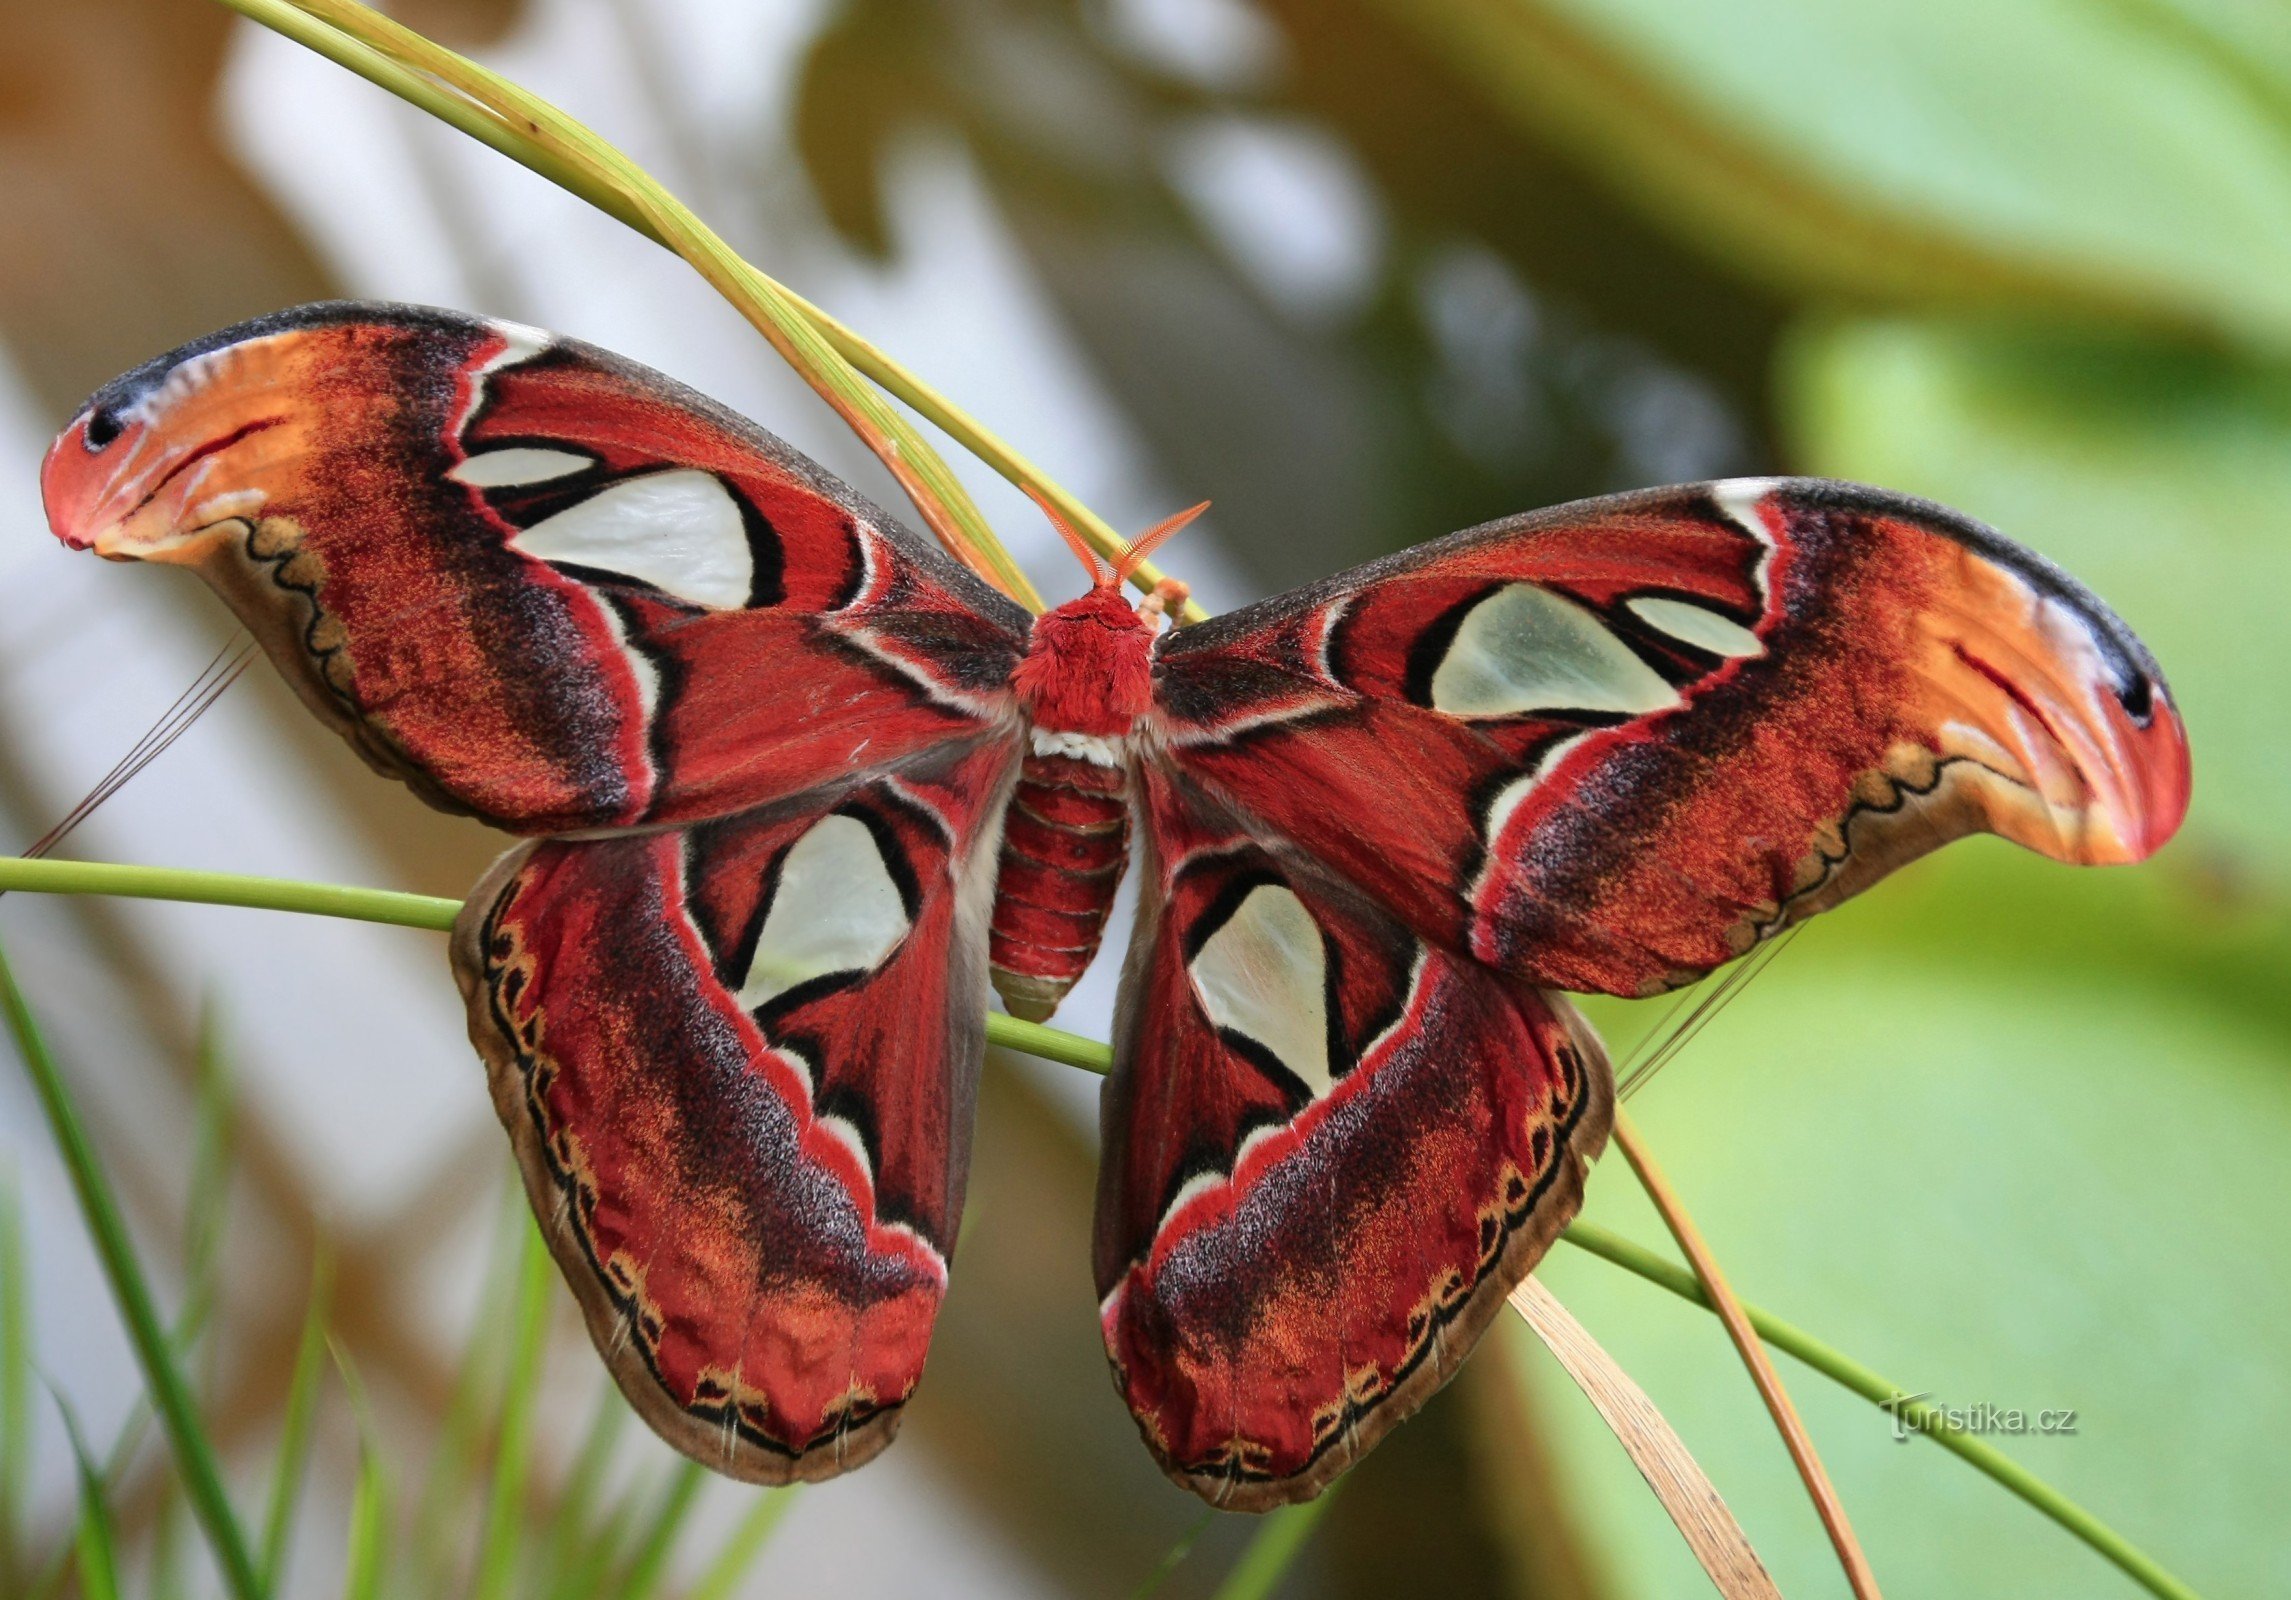 植物園ブルノ - Attacus アトラス - 世界最大の蝶 12.9.2014